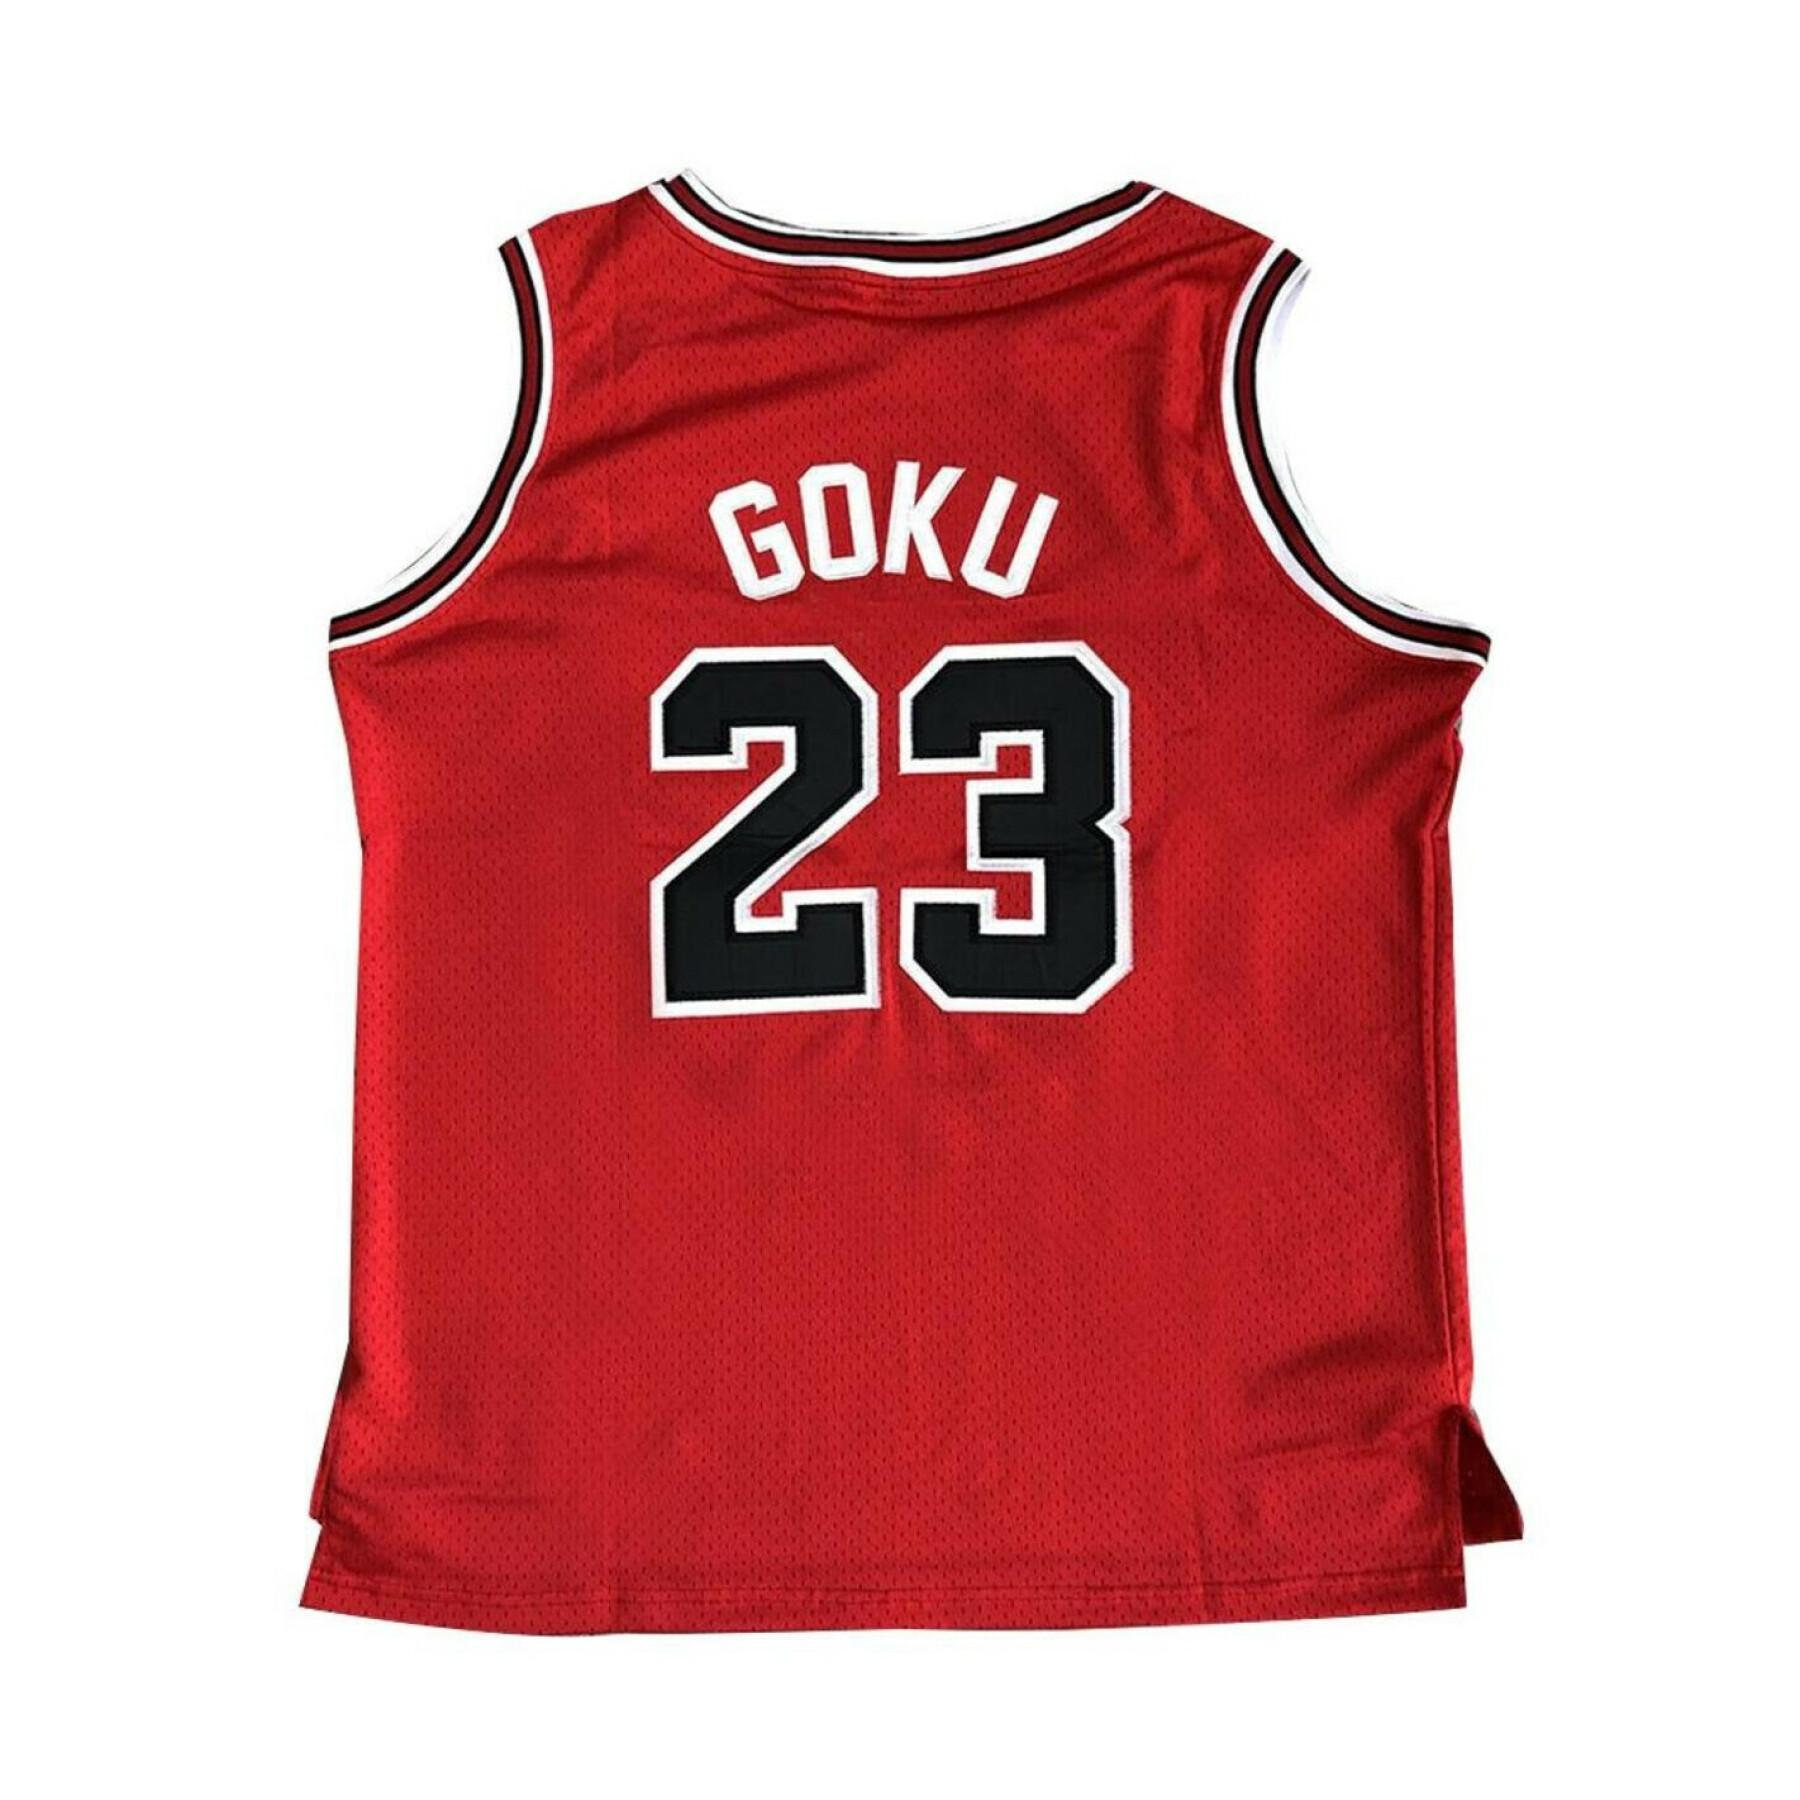 goku bulls jersey